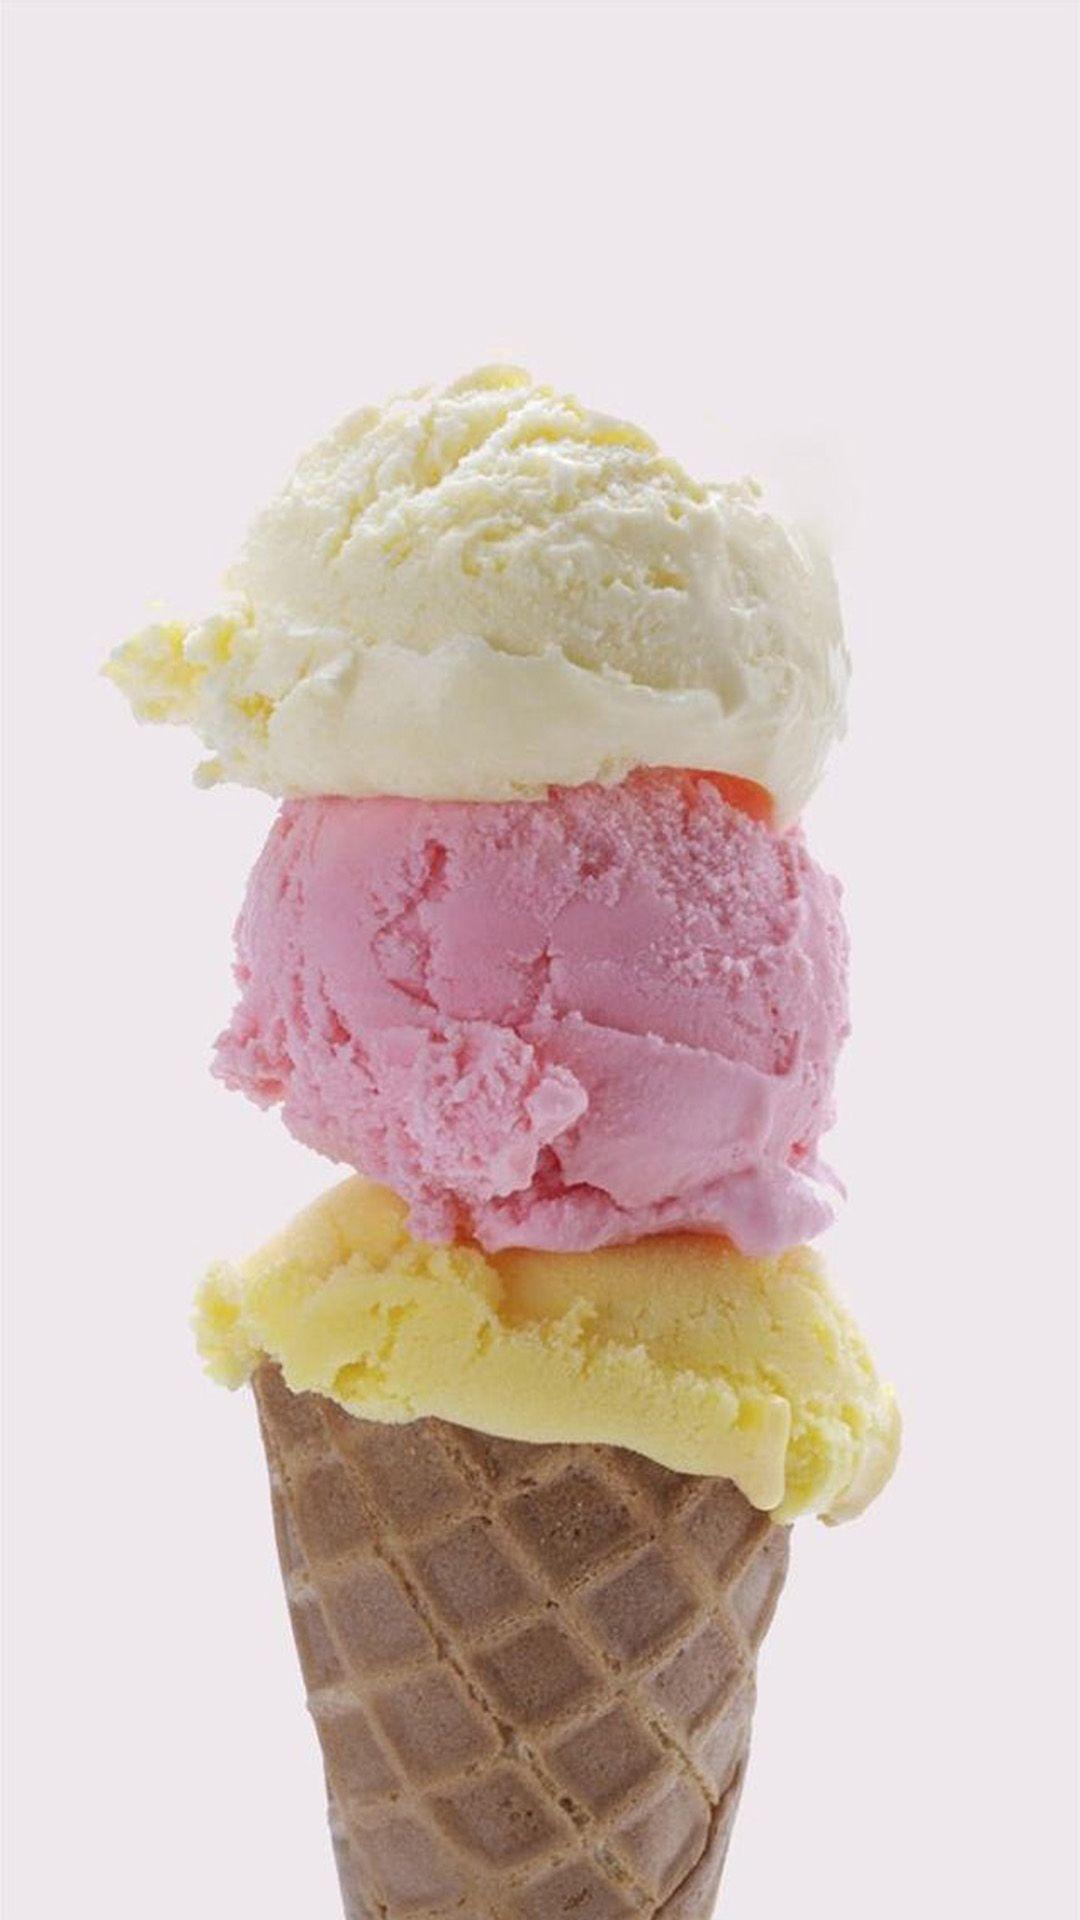 Ice Cream Cone IPhone Wallpaper. Ice Cream Wallpaper Iphone, Ice Cream Wallpaper, Cream Wallpaper